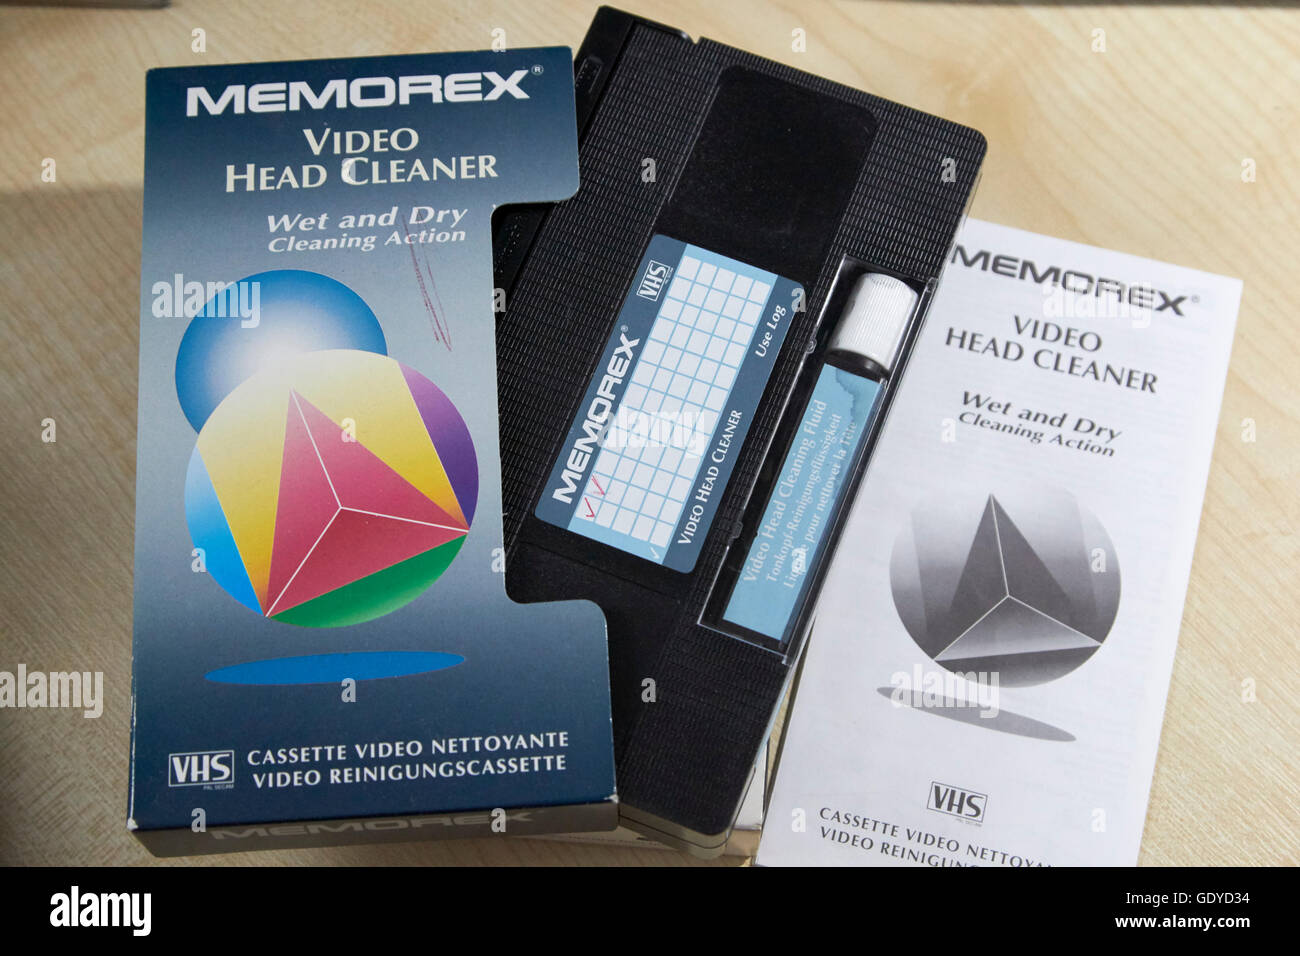 Memorex VHS a umido e a secco Pulitore di testine video Foto Stock